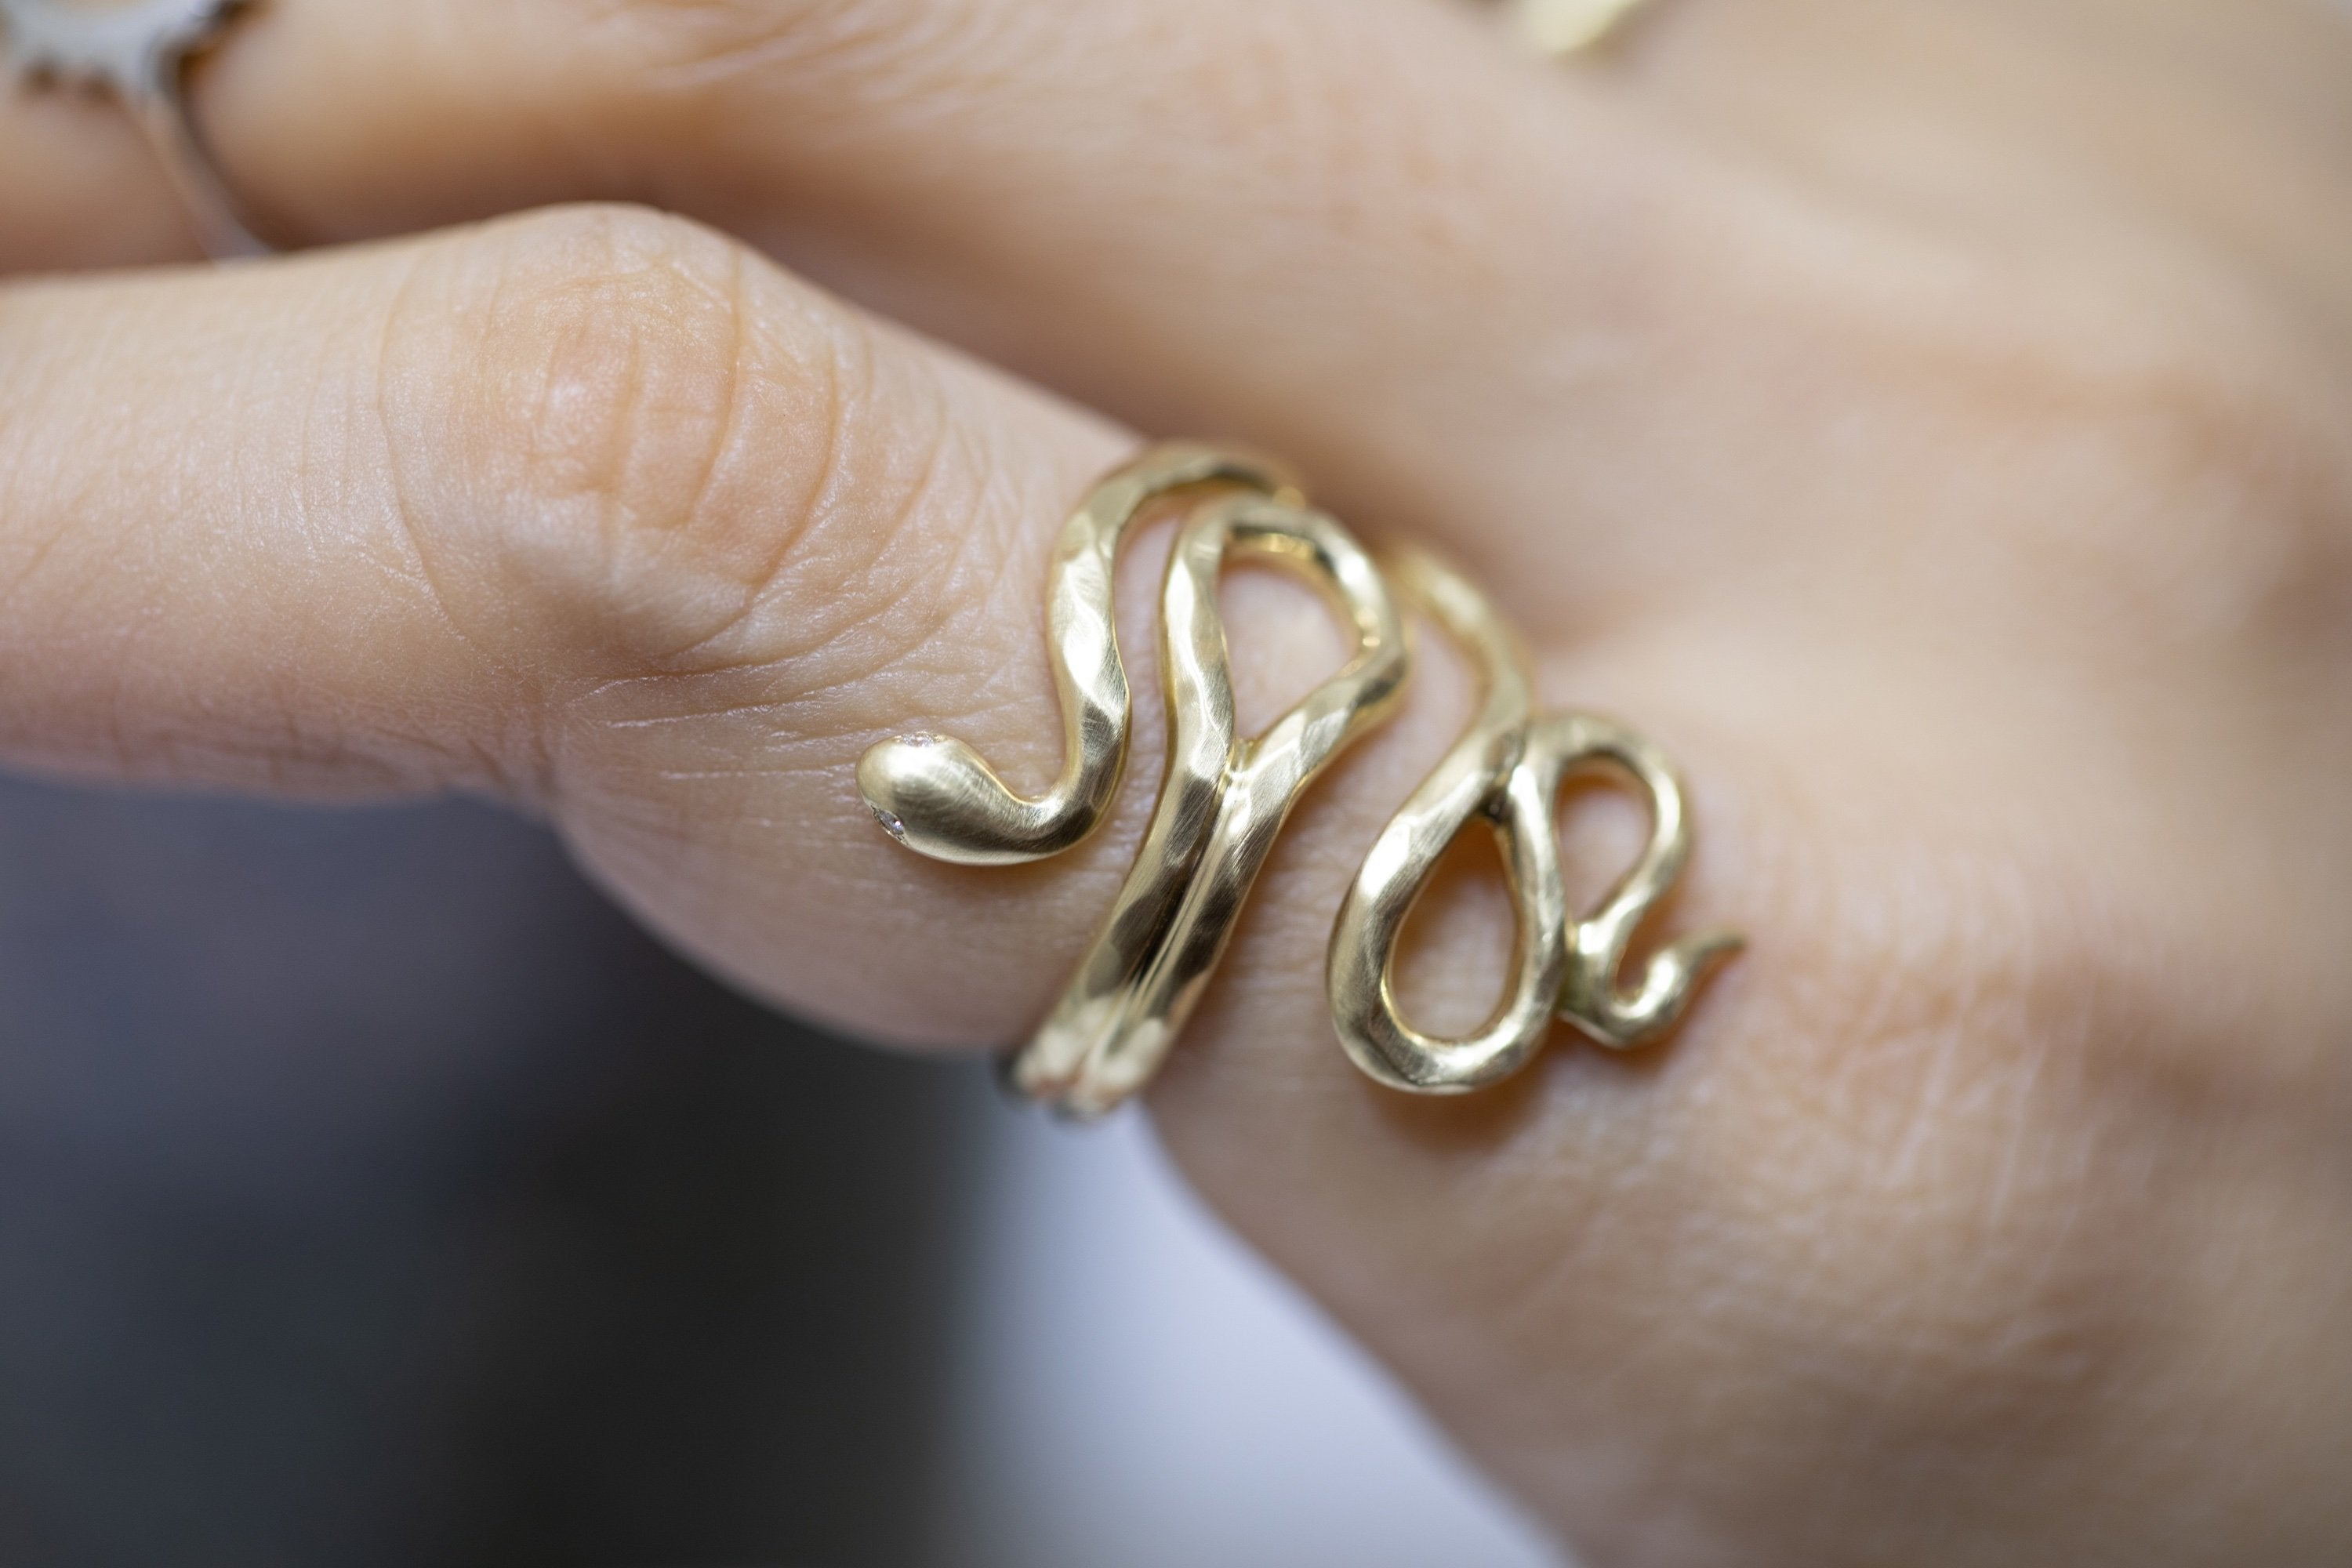 Golden Snake Hug Ring (18k)